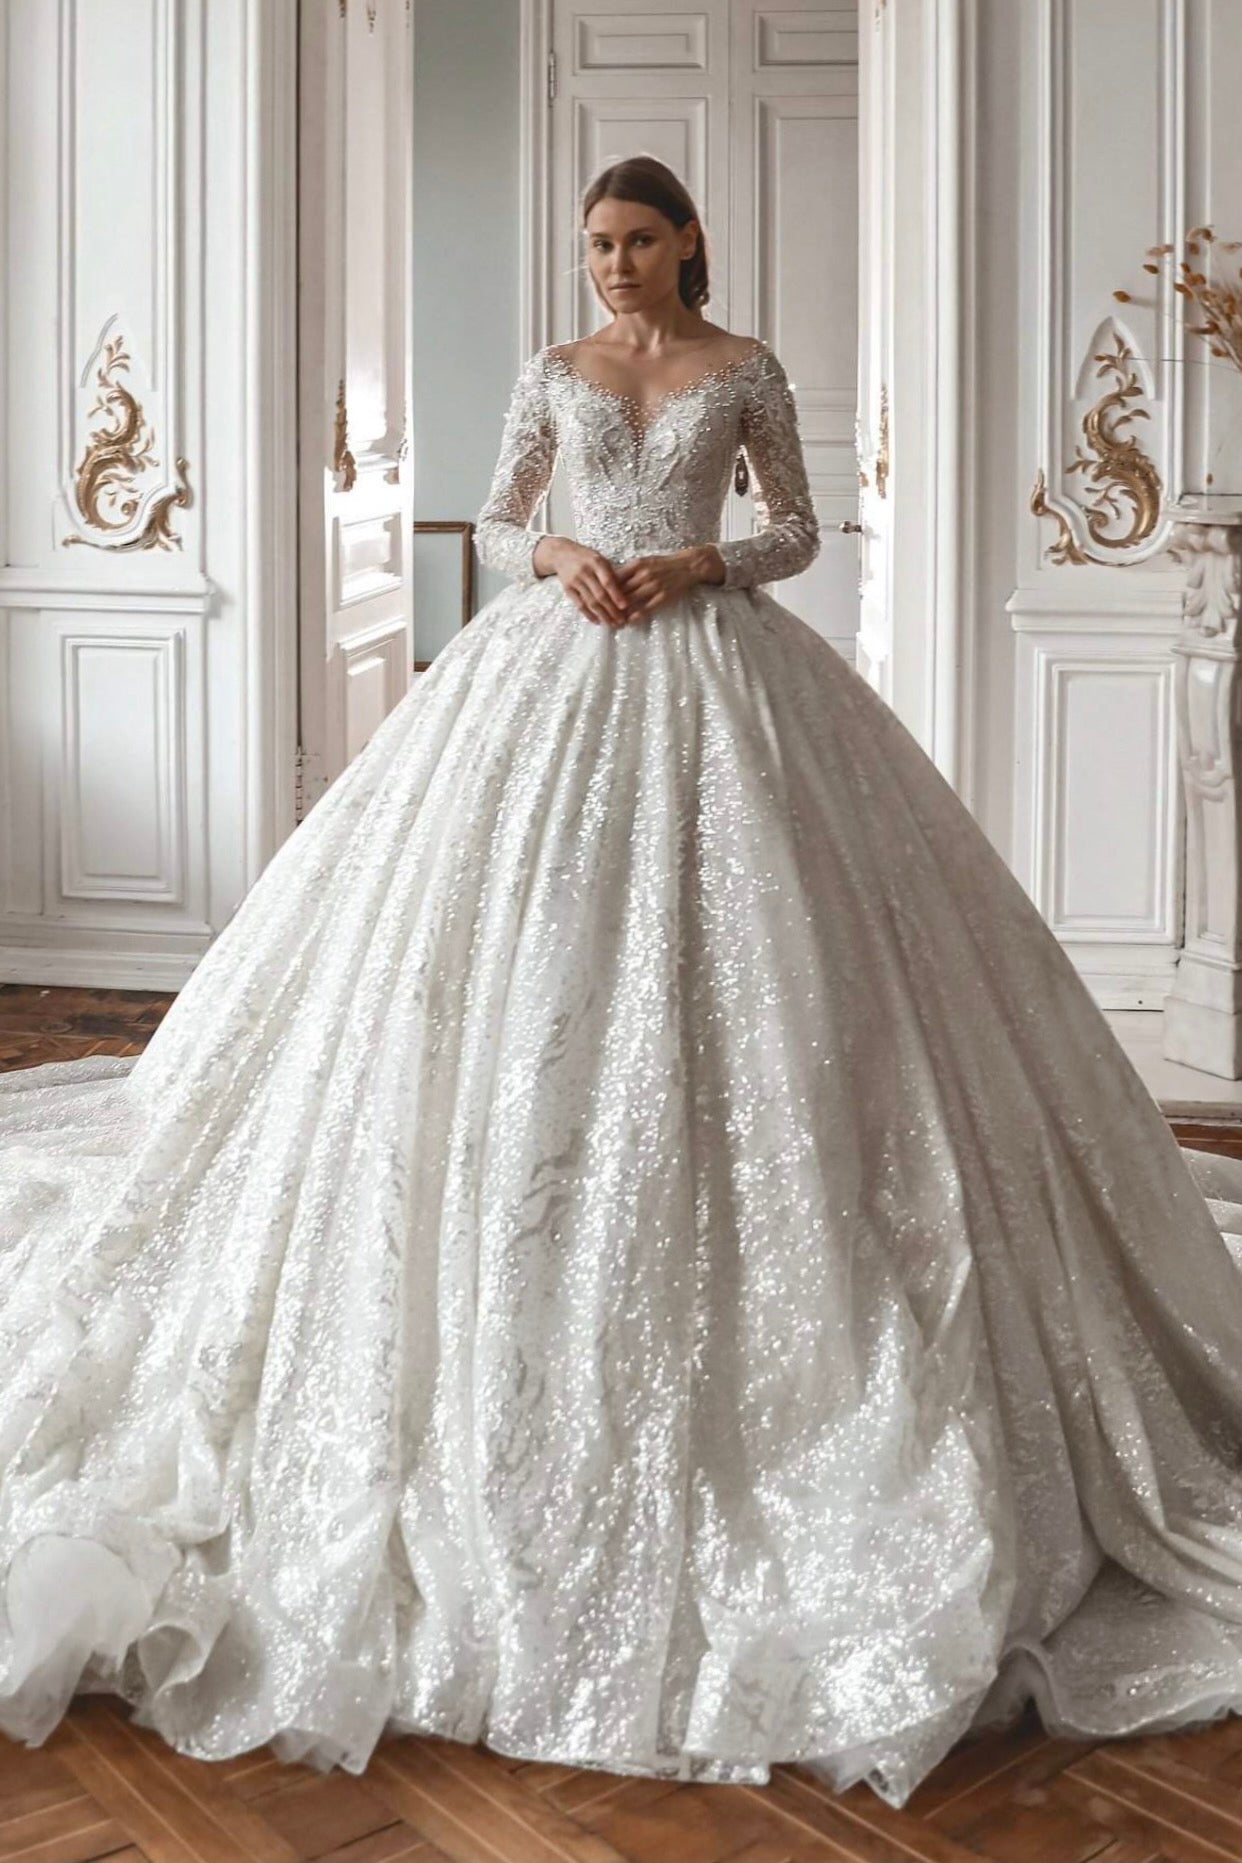 Sequin Wedding Dresses & Gowns | Online Bridal Shop – OLIVIA BOTTEGA